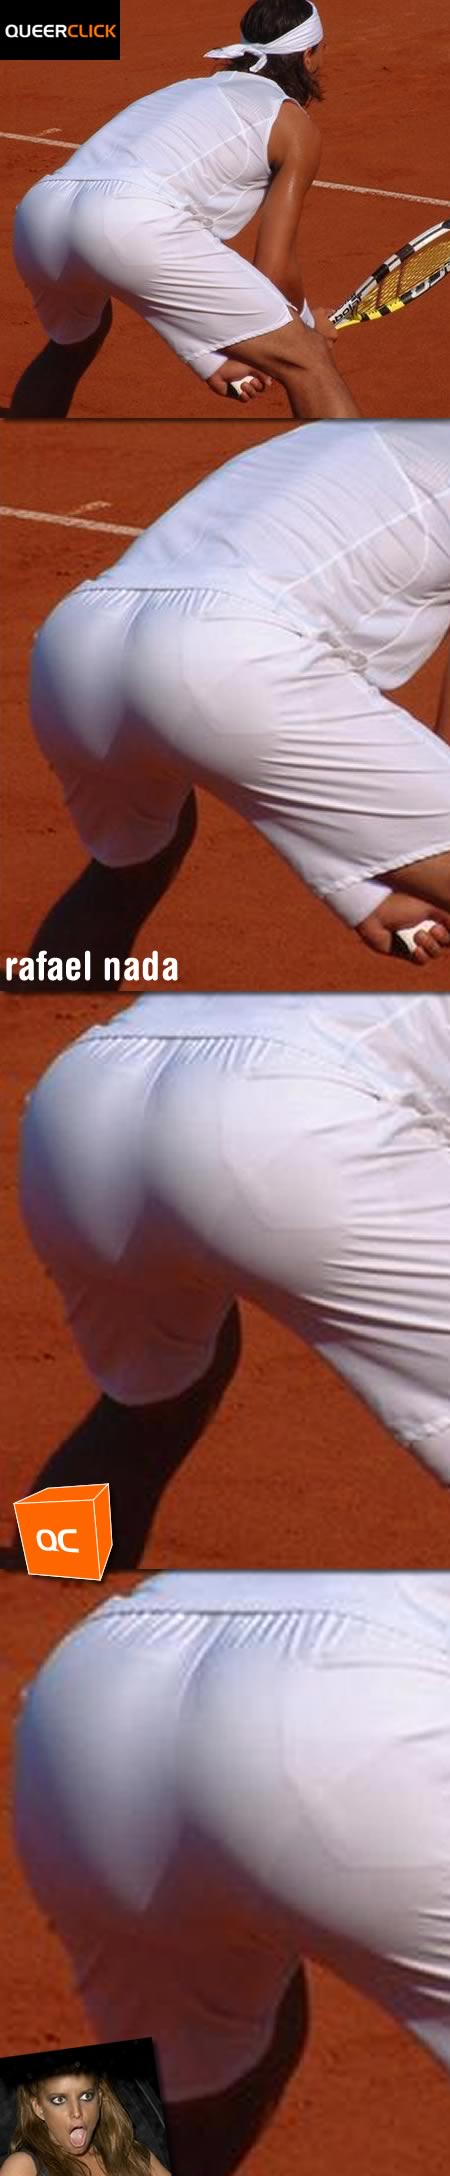 Rafael Nadal Butt